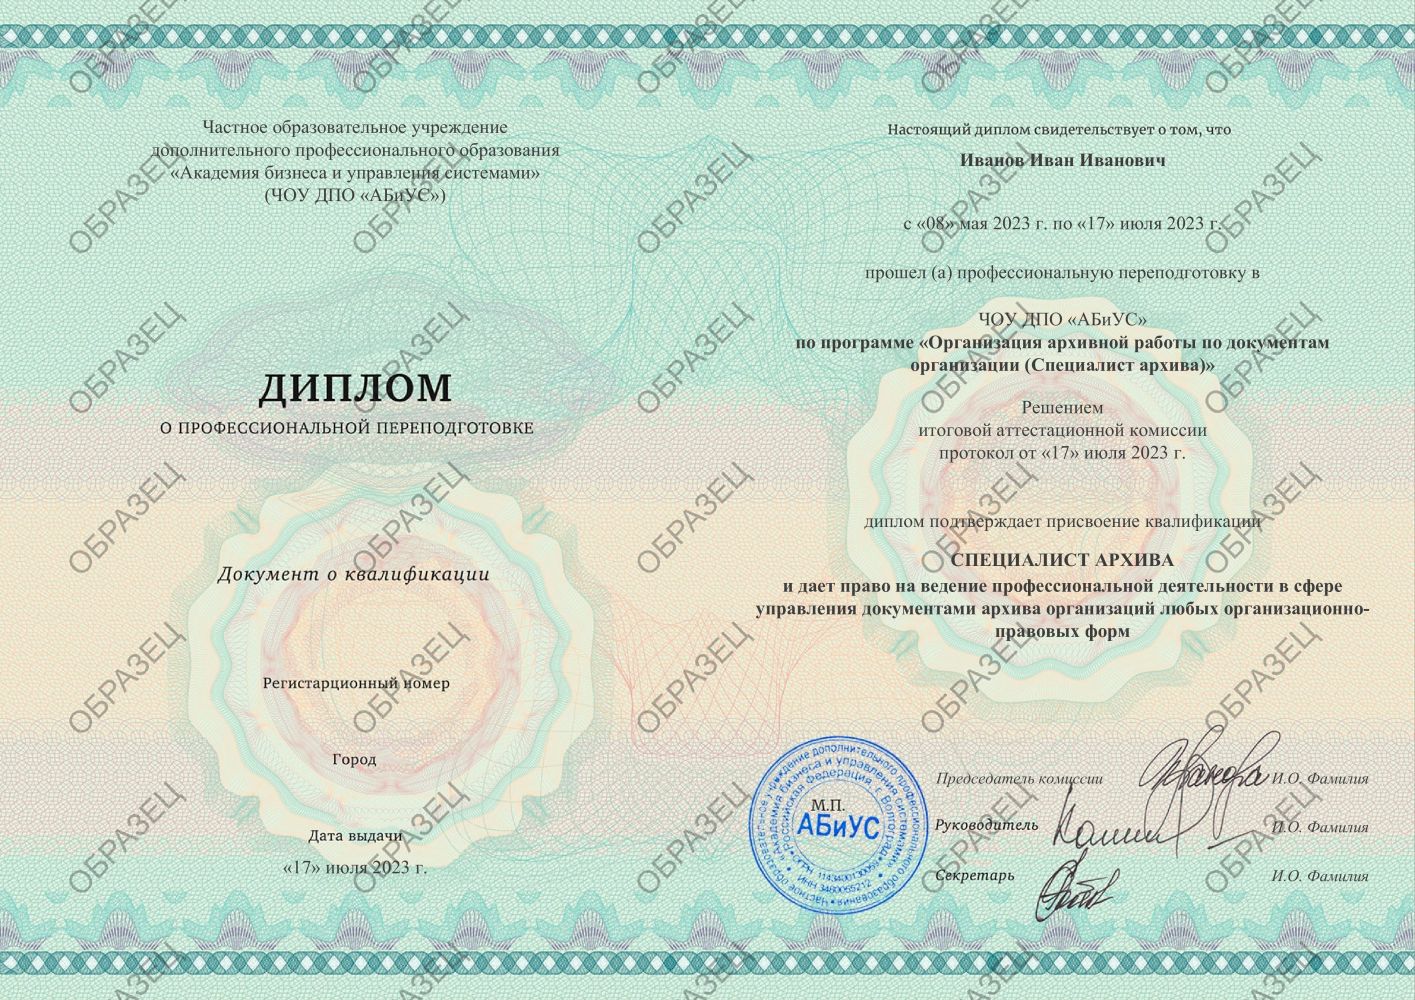 Диплом Организация архивной работы по документам организации (Специалист архива) 260 часов 11875 руб.